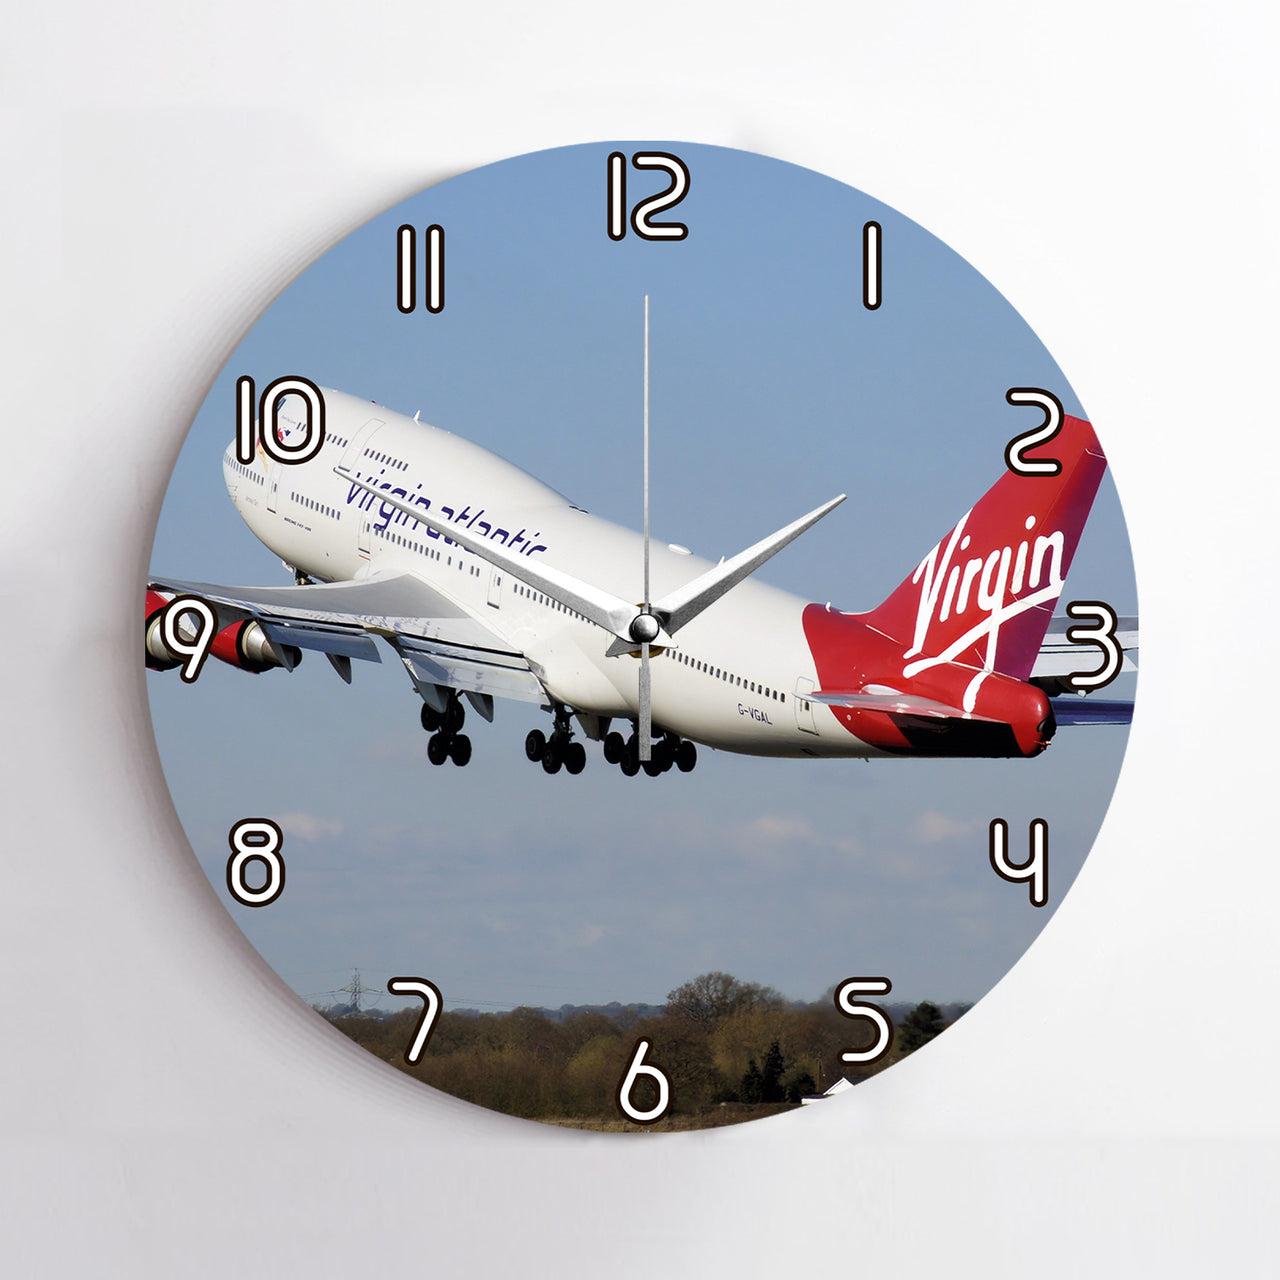 Virgin Atlantic Boeing 747 Printed Wall Clocks